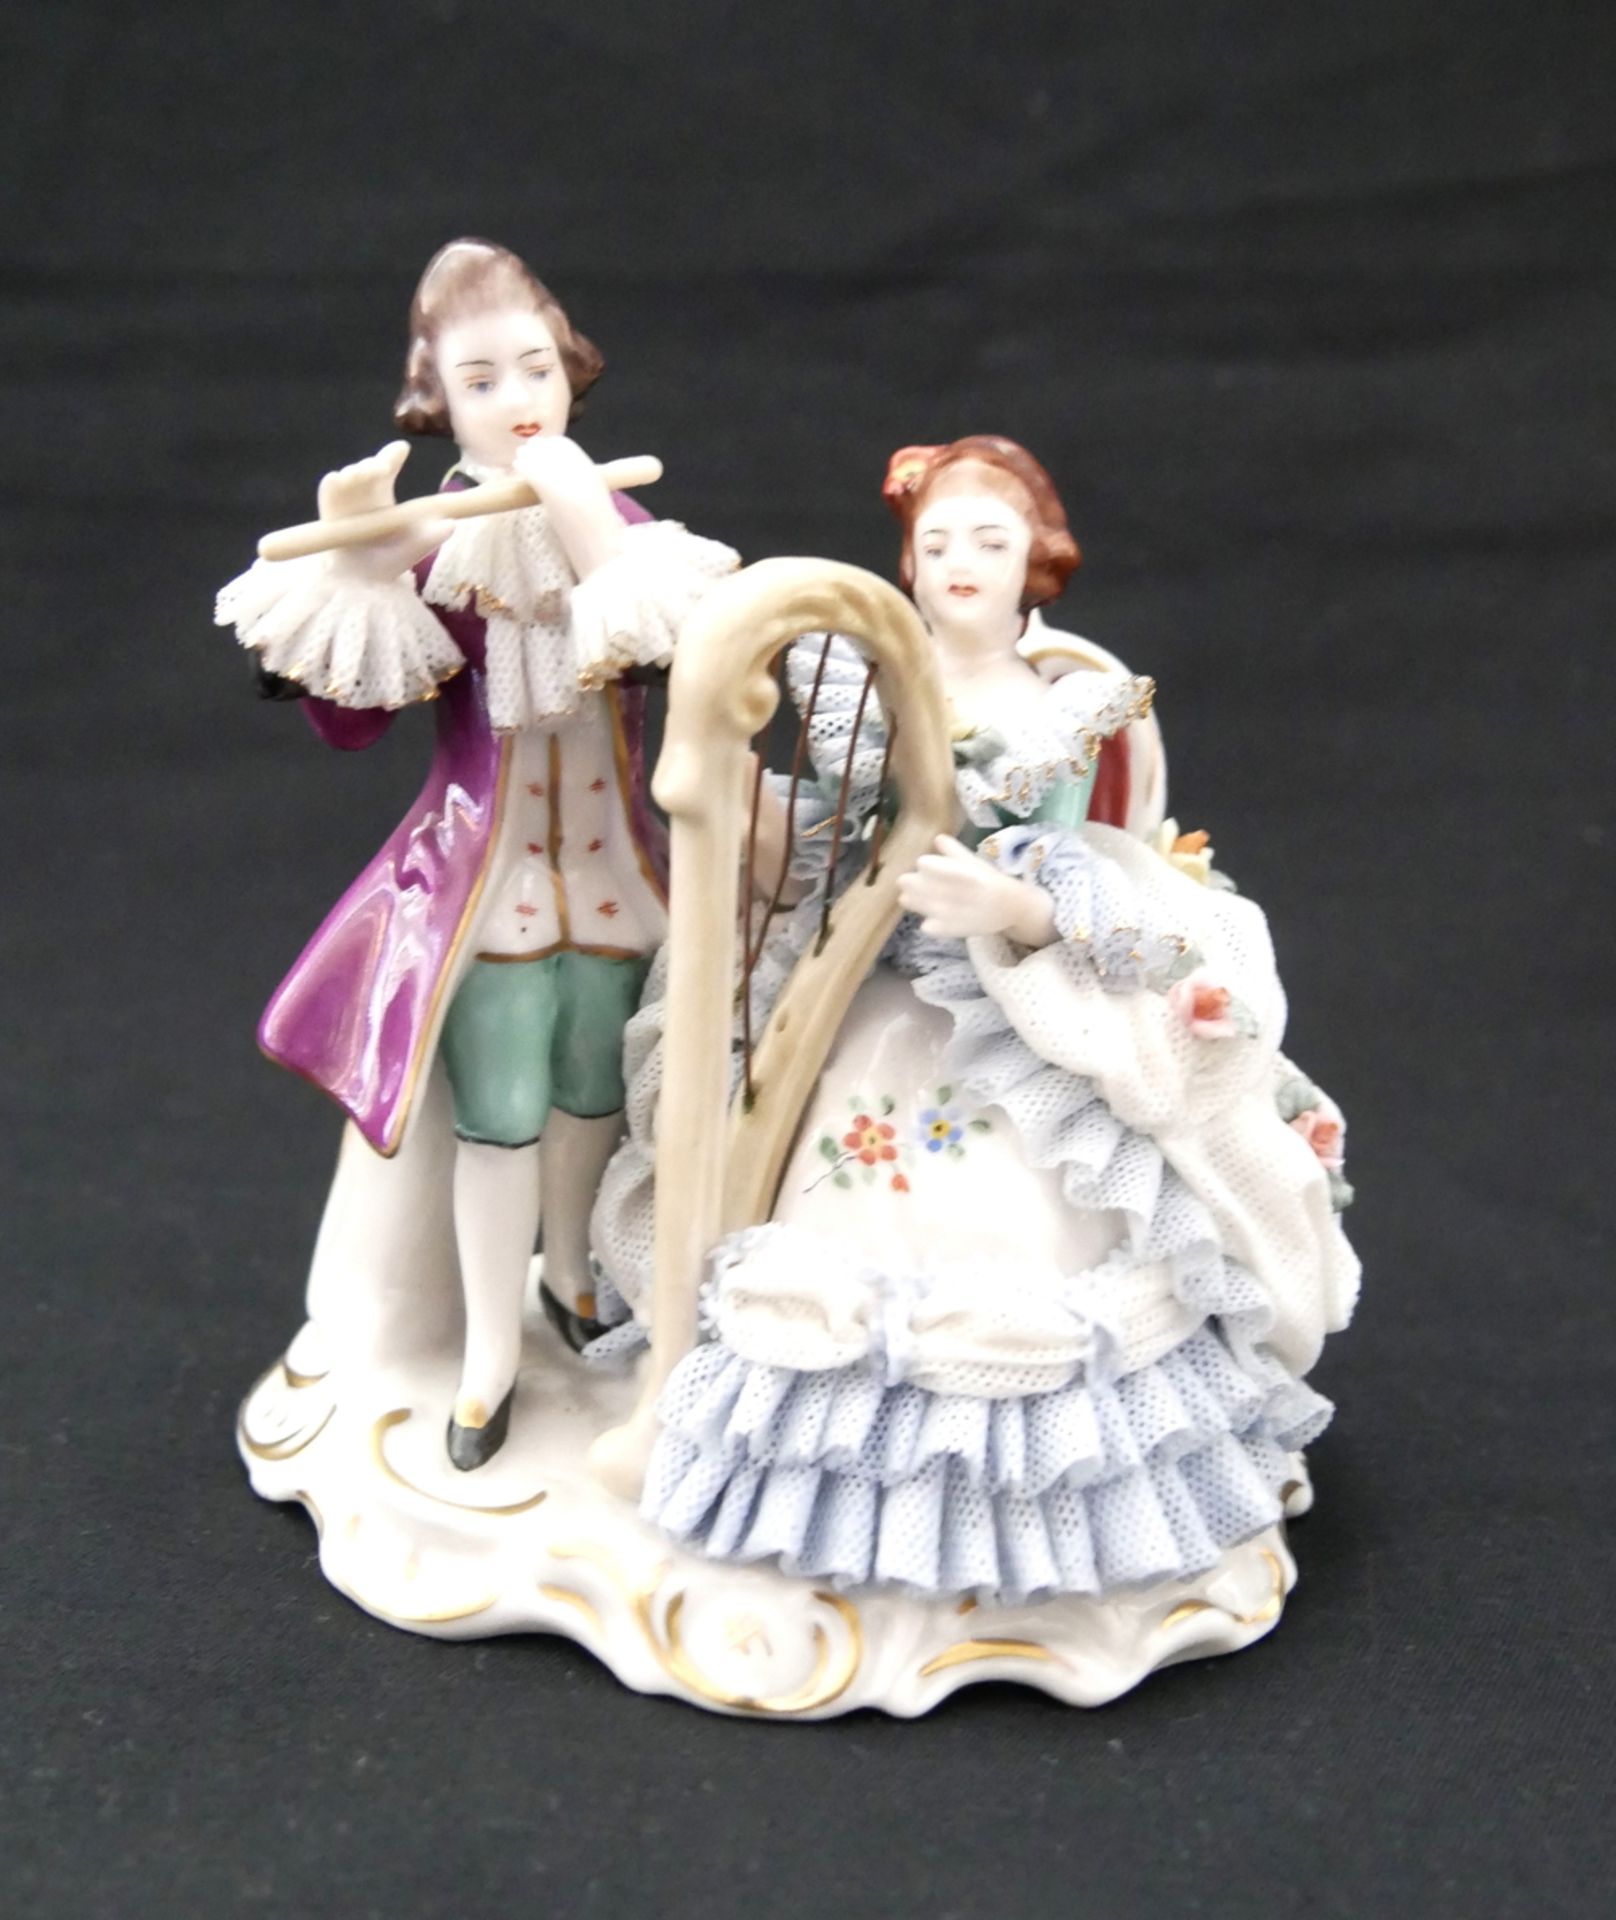 Porzellanfigur "musizierendes Paar" von der Porzellanmanufaktur Friedrich Wilhelm Wessel aus